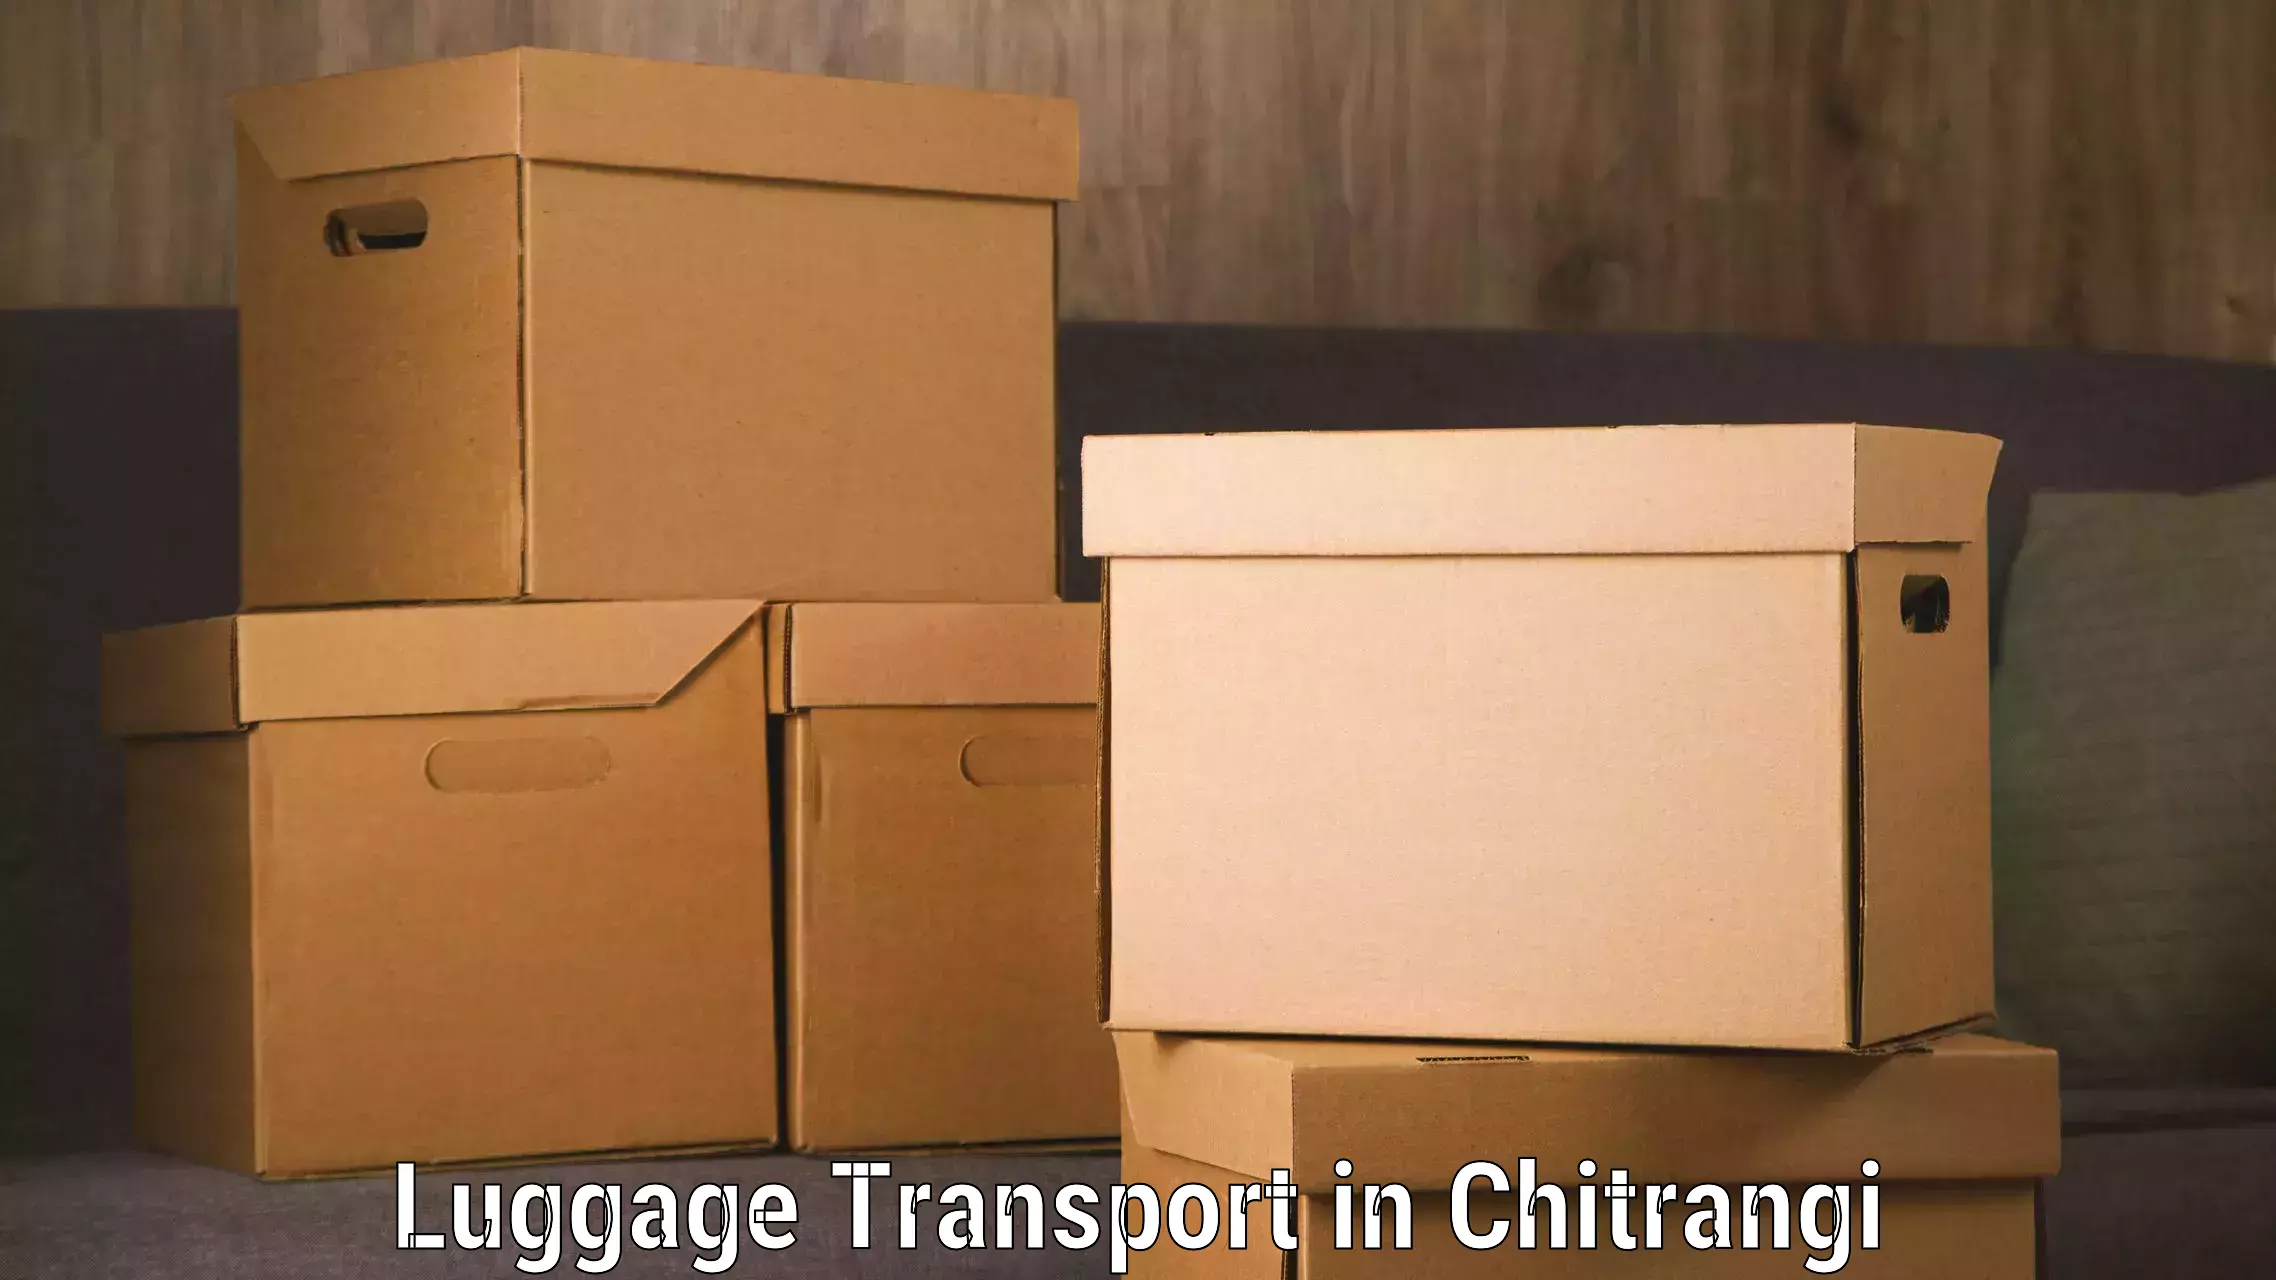 Baggage transport scheduler in Chitrangi